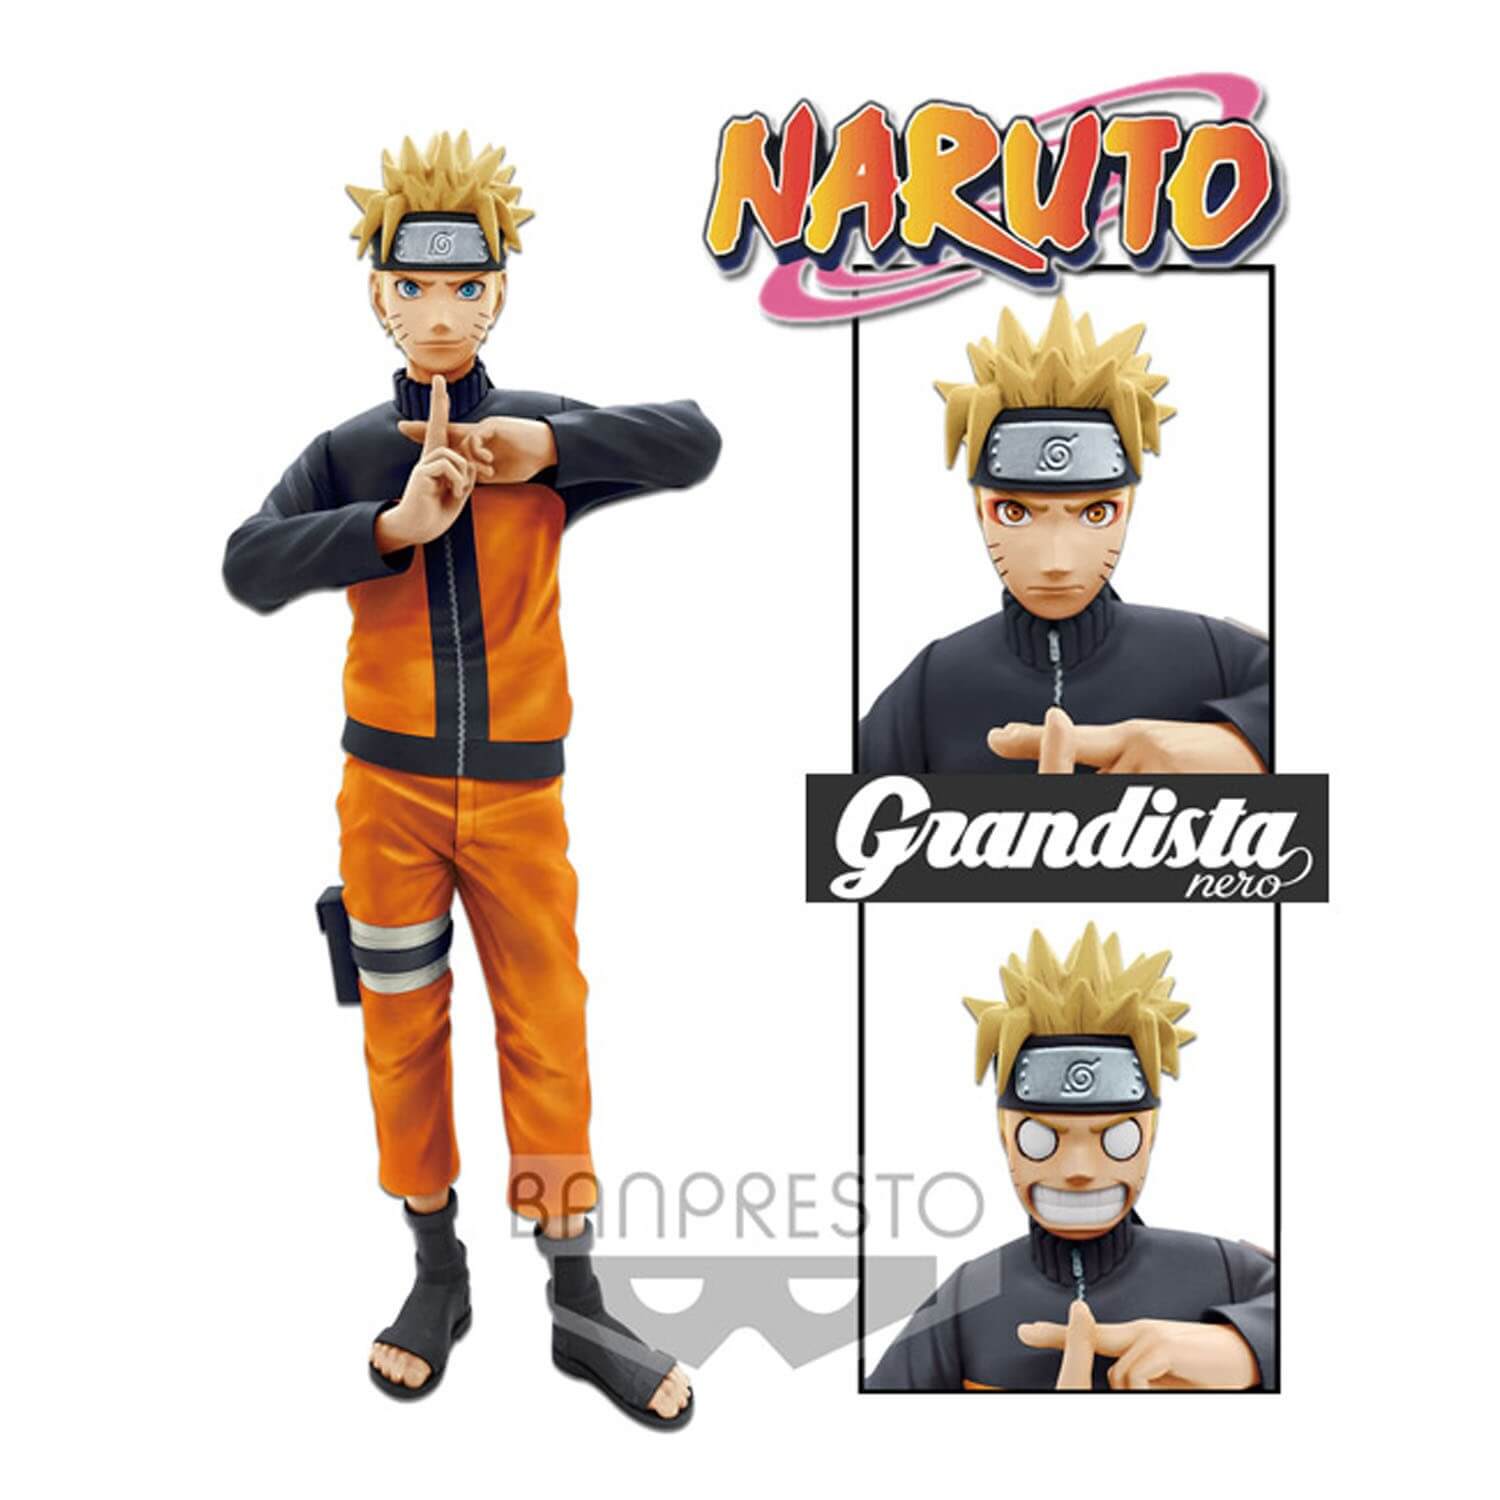 Naruto Shippuden Grandista Nero - Figurine Naruto Uzumaki Manga